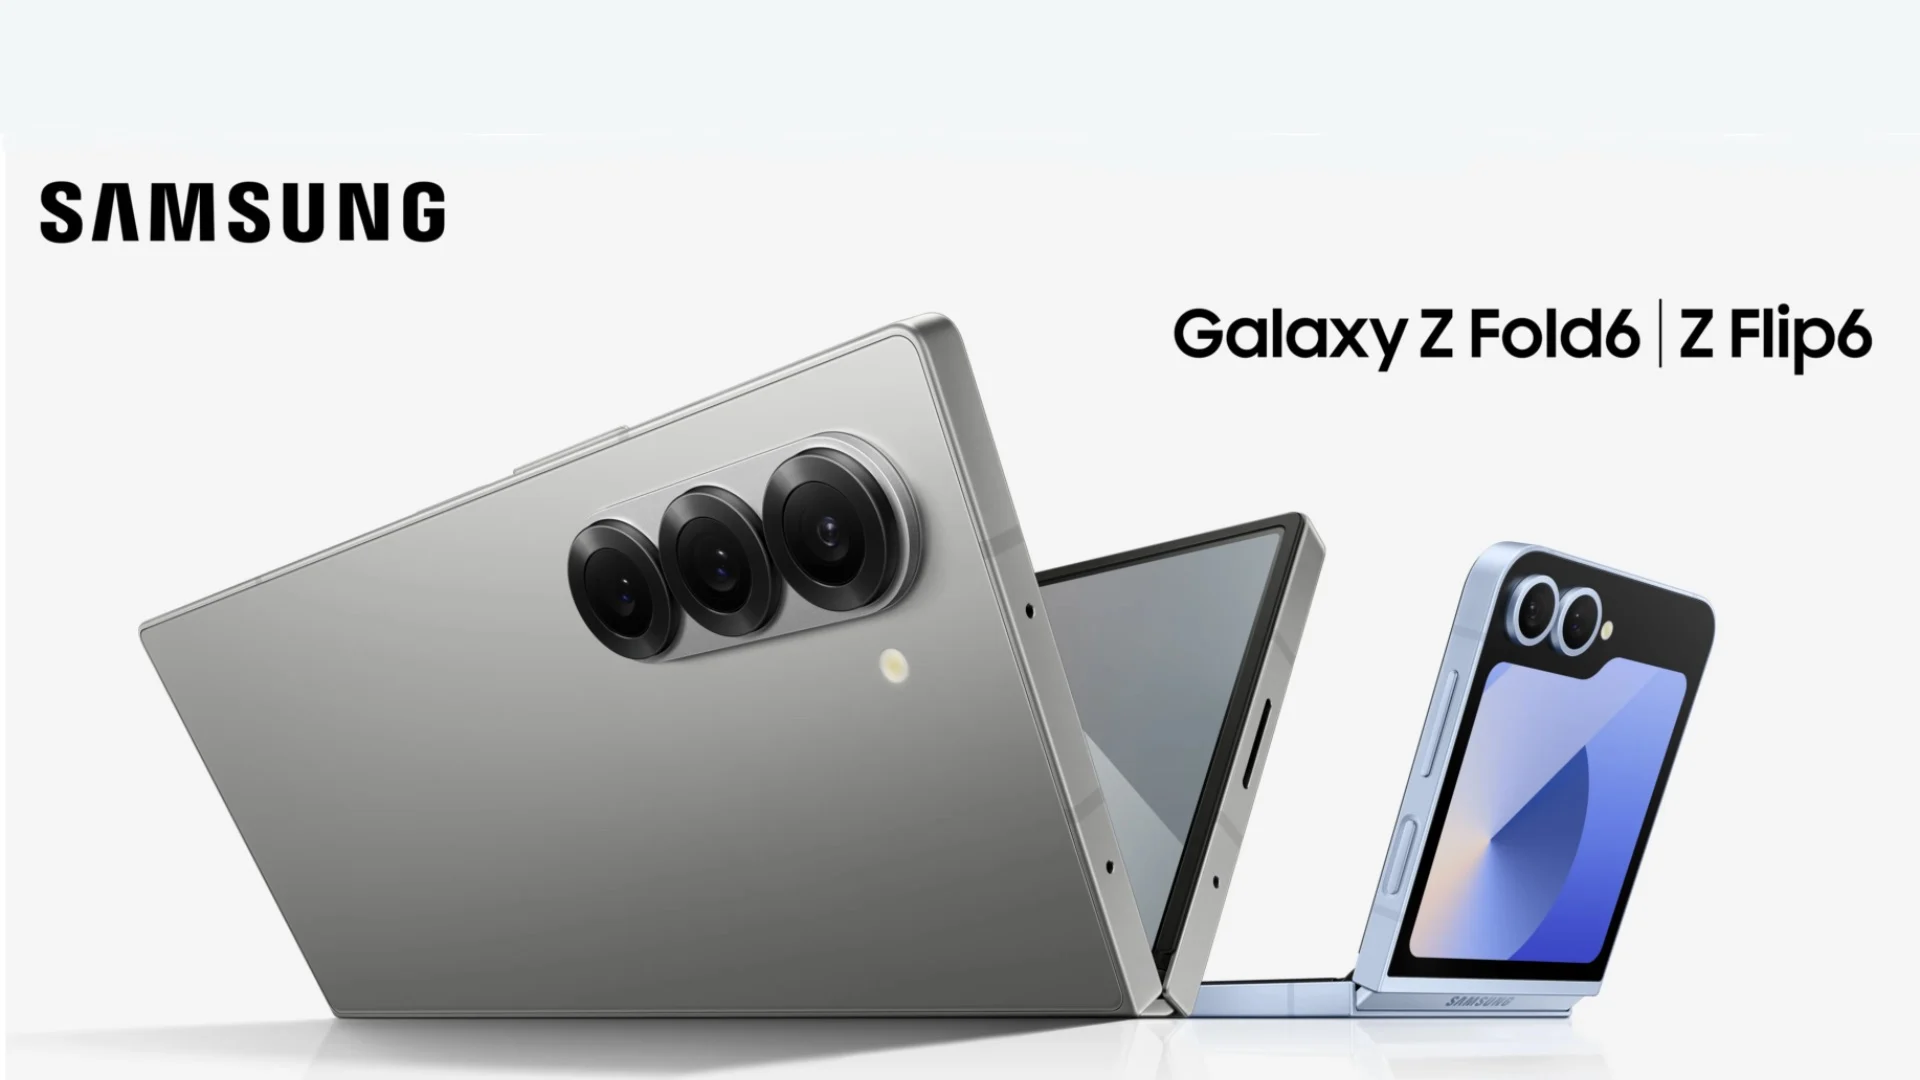 Alle Details zu den kommenden faltbaren Smartphones von Samsung, dem Samsung Galaxy Fold 6 und Flip 6, sind online aufgetaucht